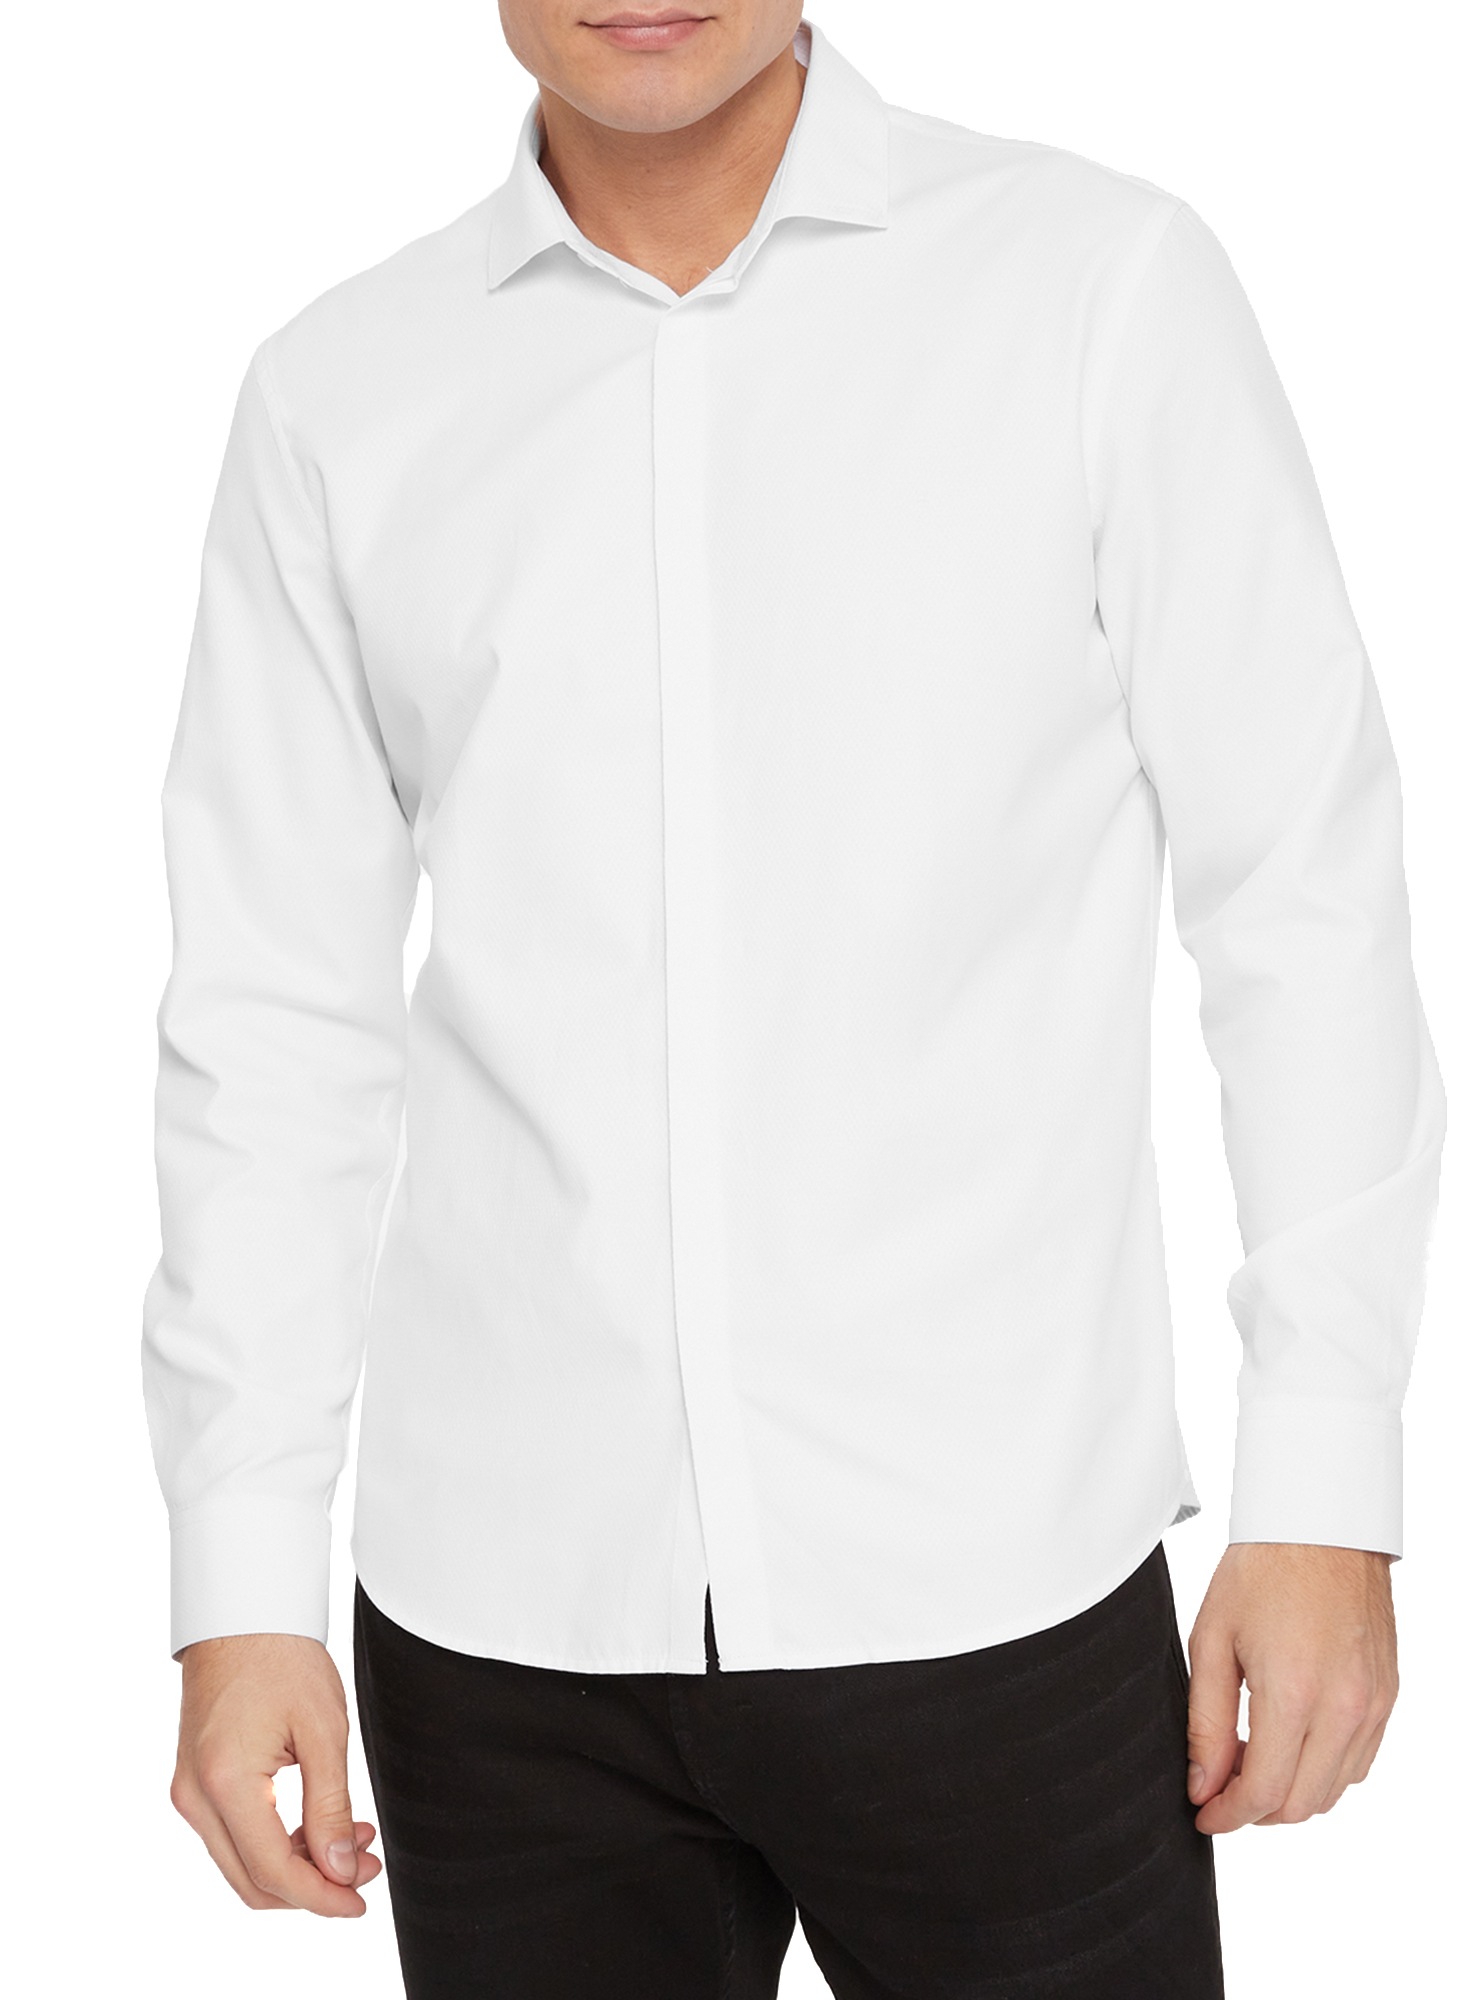 Рубашка мужская oodji 3B110017M-6 белая XL